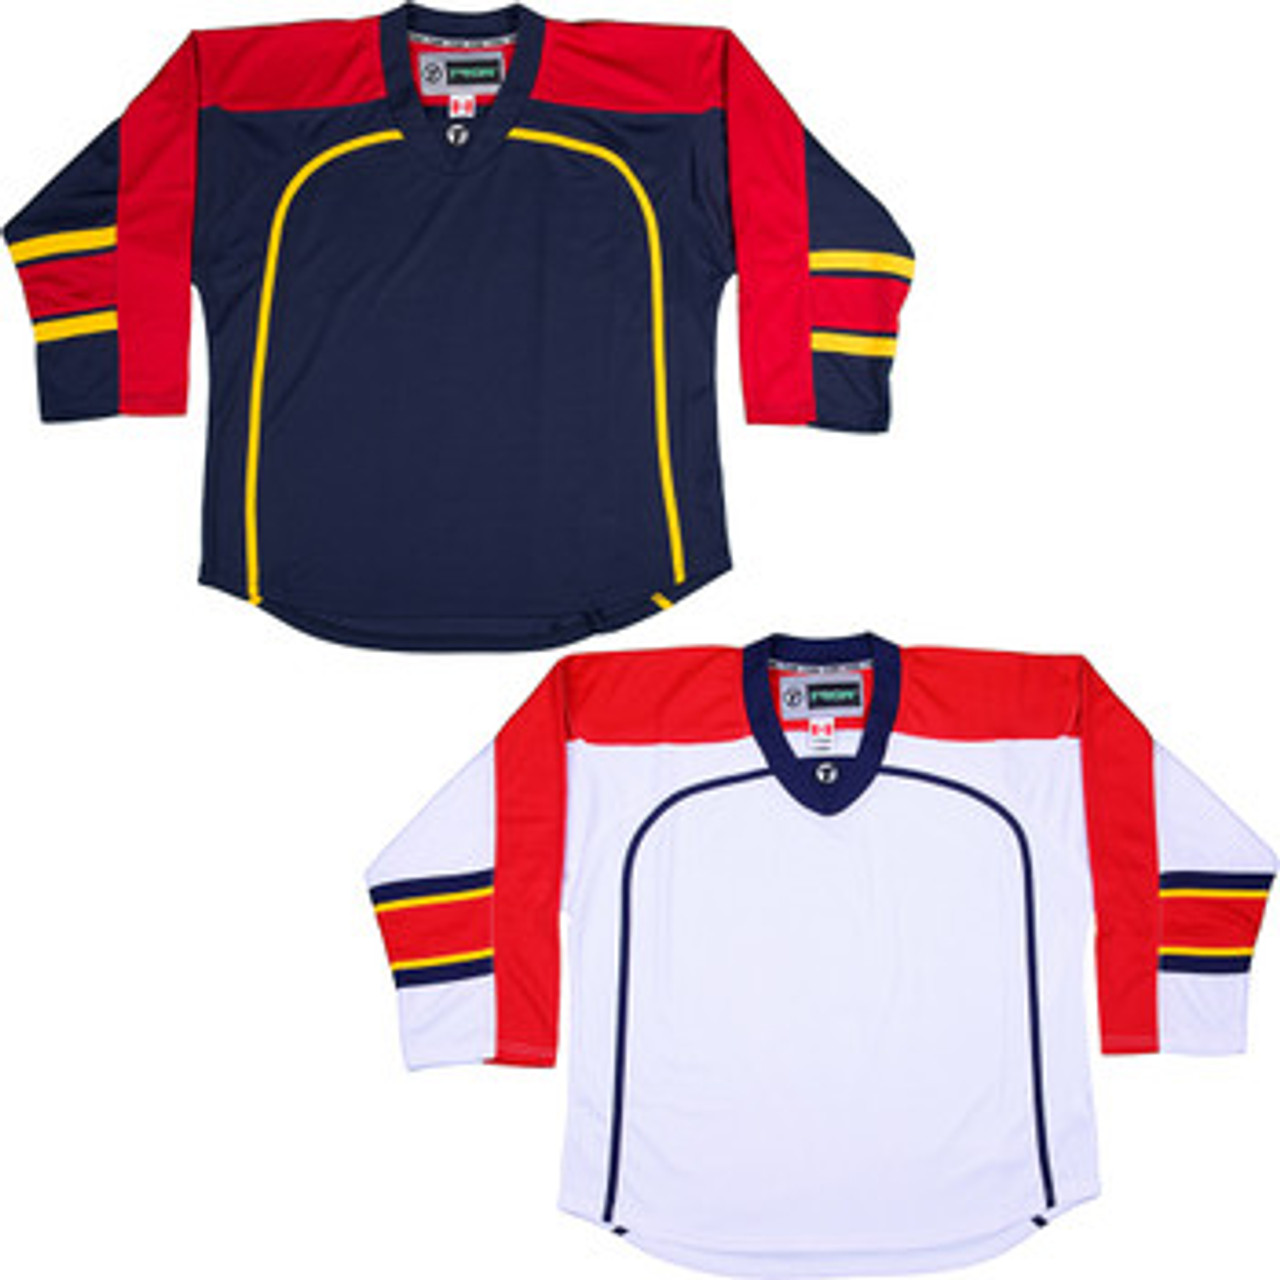 panthers hockey shirt